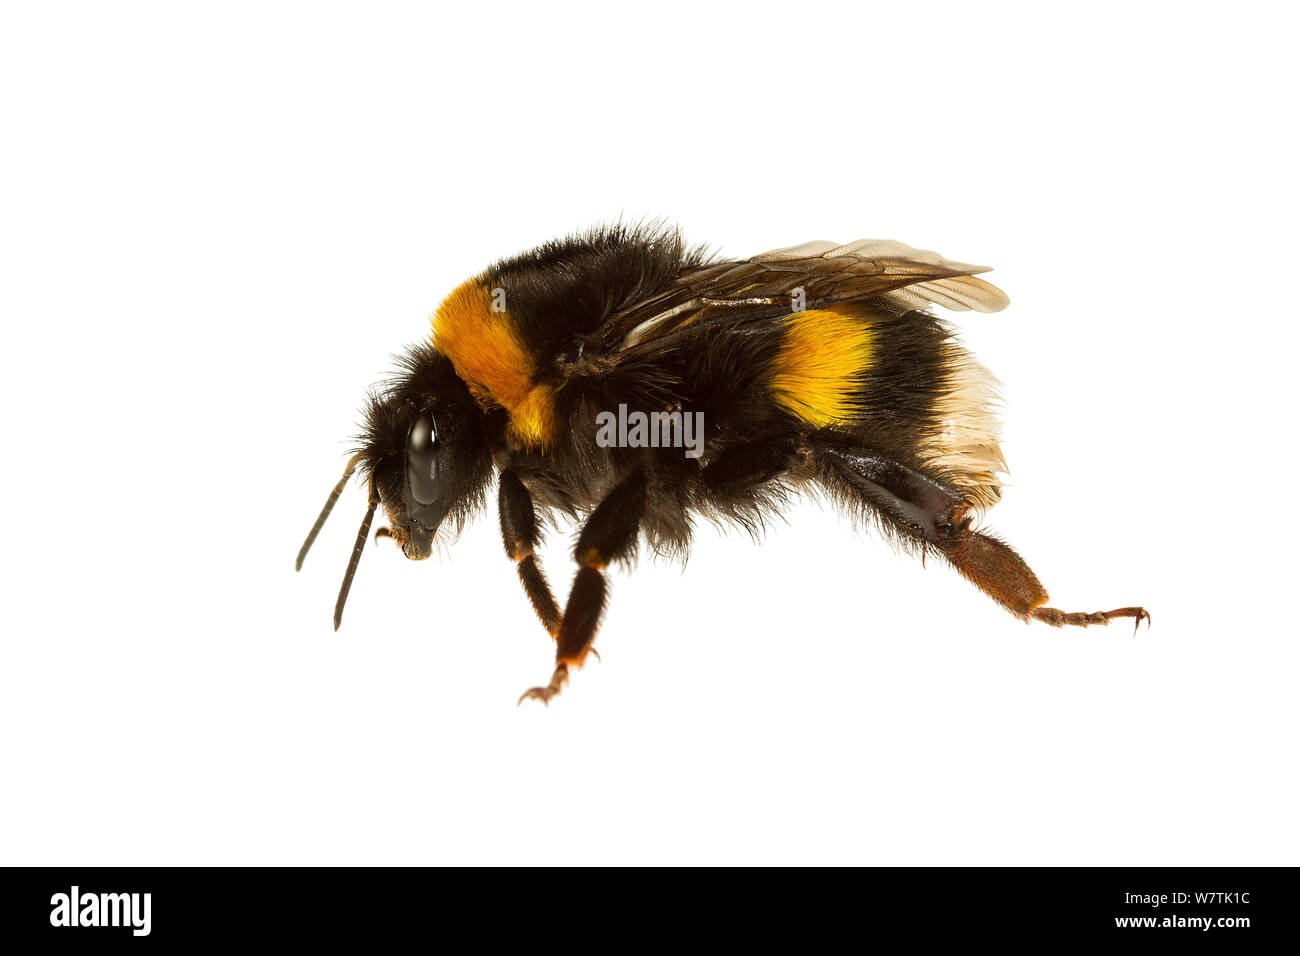 Garden bumblebee (Bombus hortorum) Genova, Liguria, Italy. Meetyourneighbours.net project Stock Photo